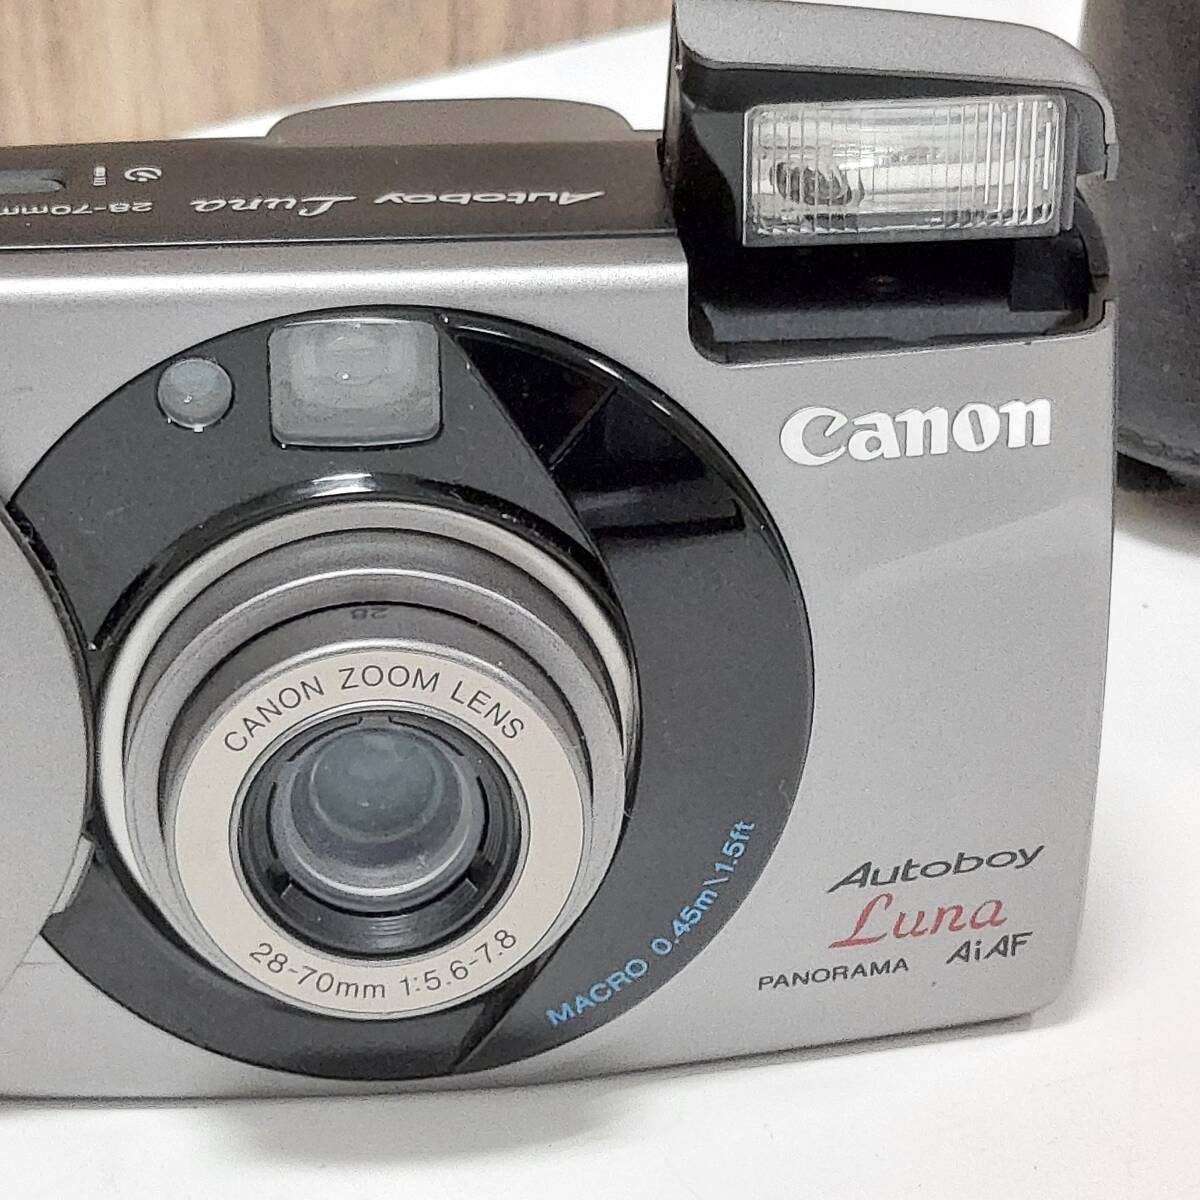 Canon キャノン Autoboy Luna PANORAMA AIAF コンパクトフィルムカメラ 現状品 中古◆21592_画像3